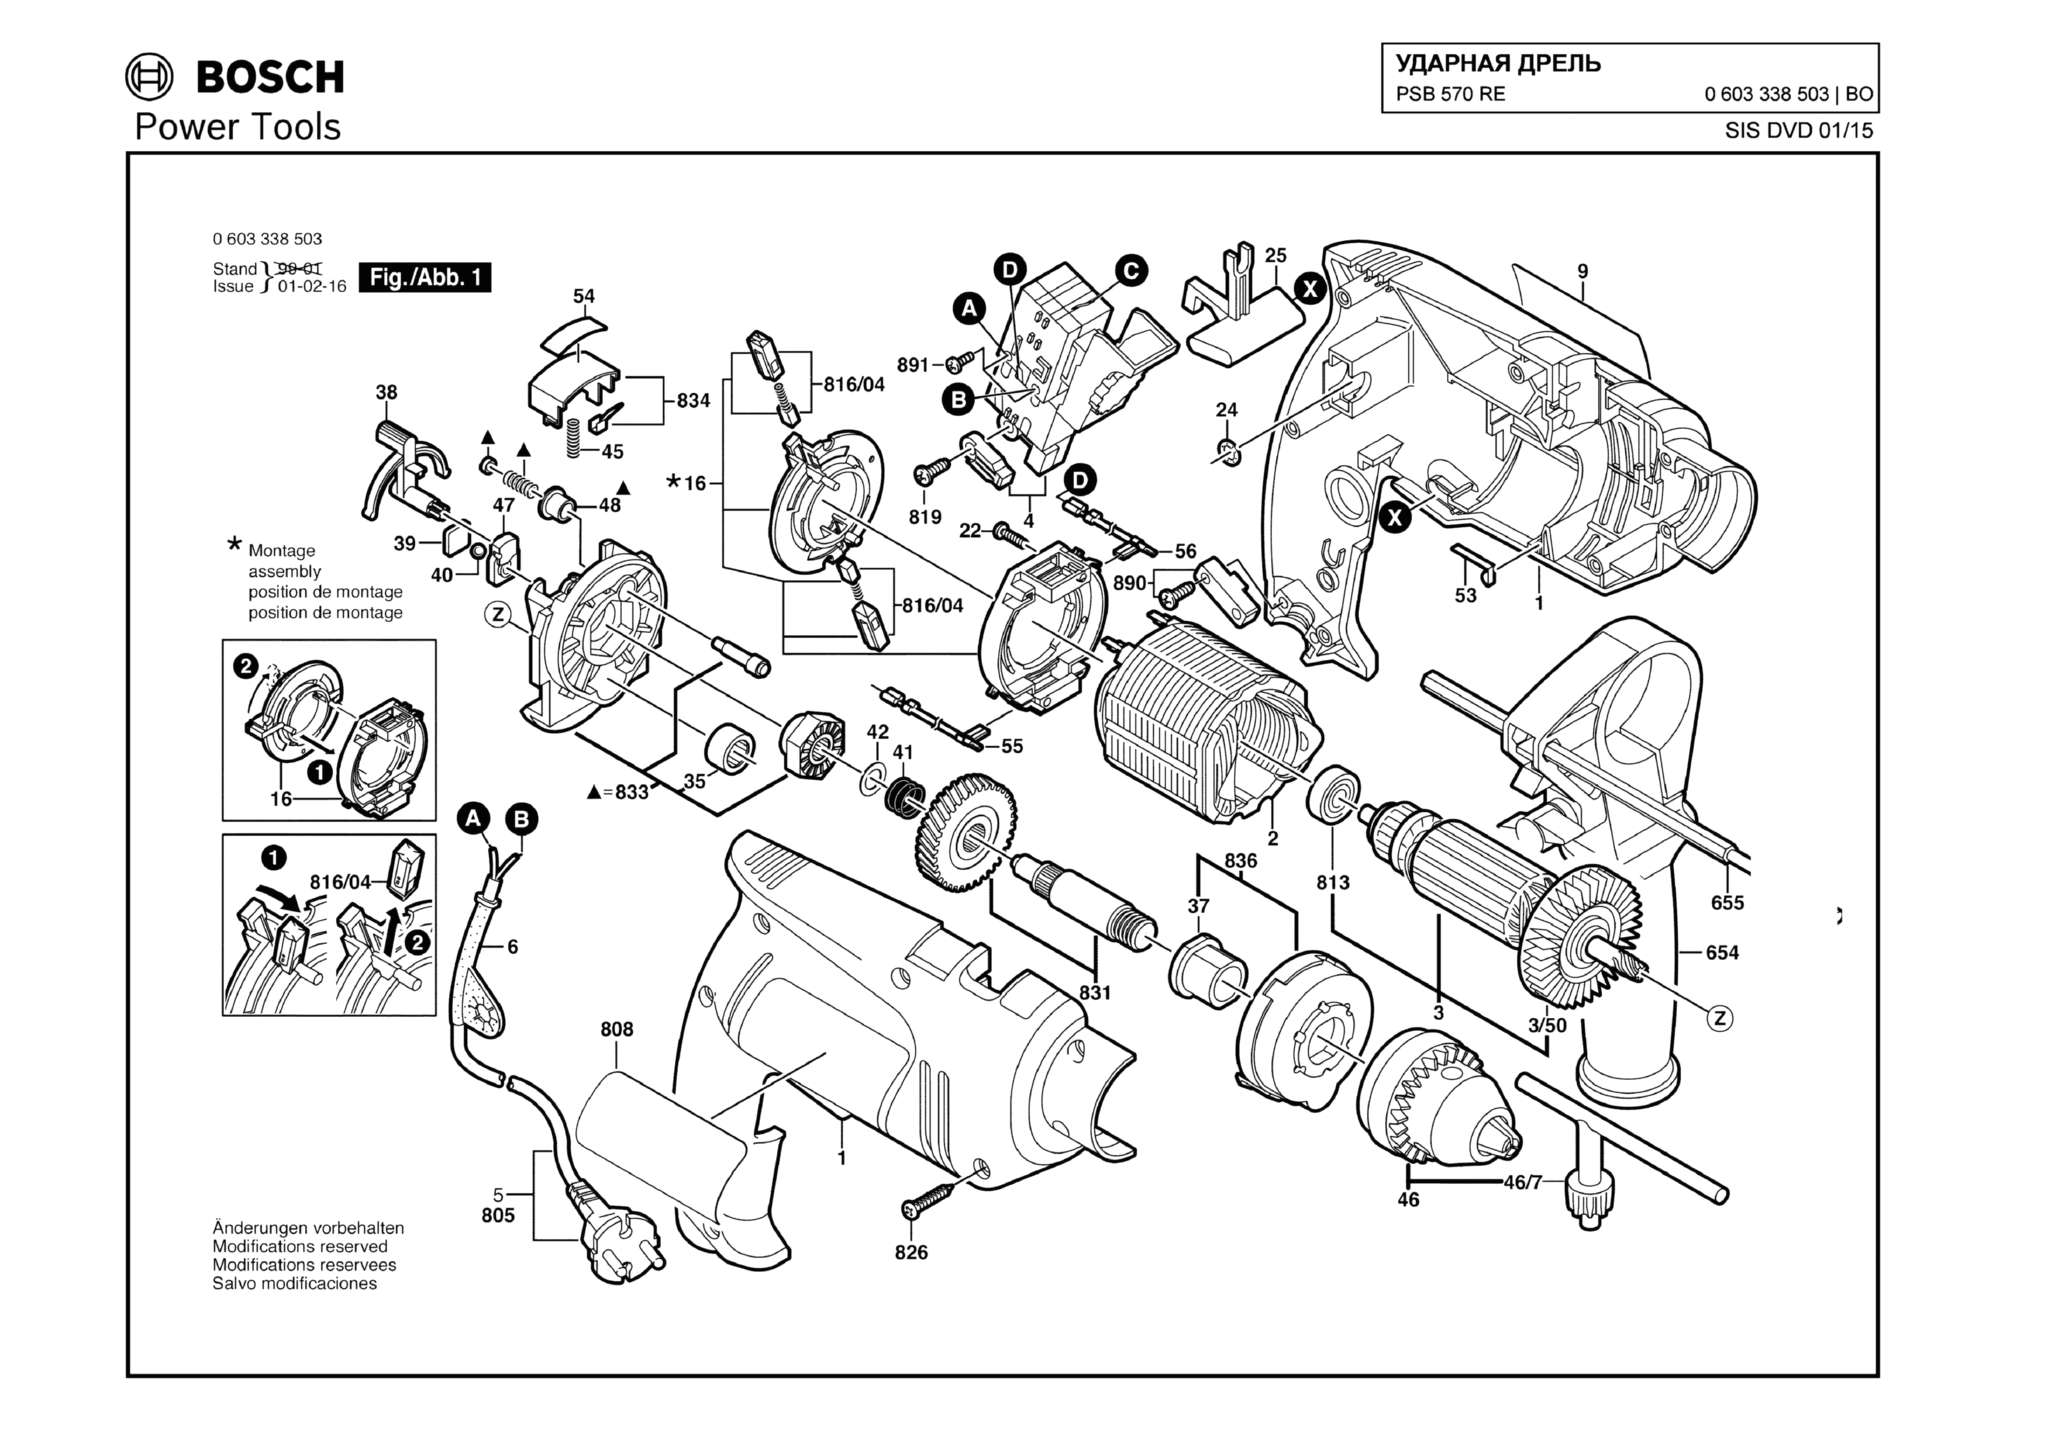 Запчасти, схема и деталировка Bosch PSB 570 RE (ТИП 0603338503)